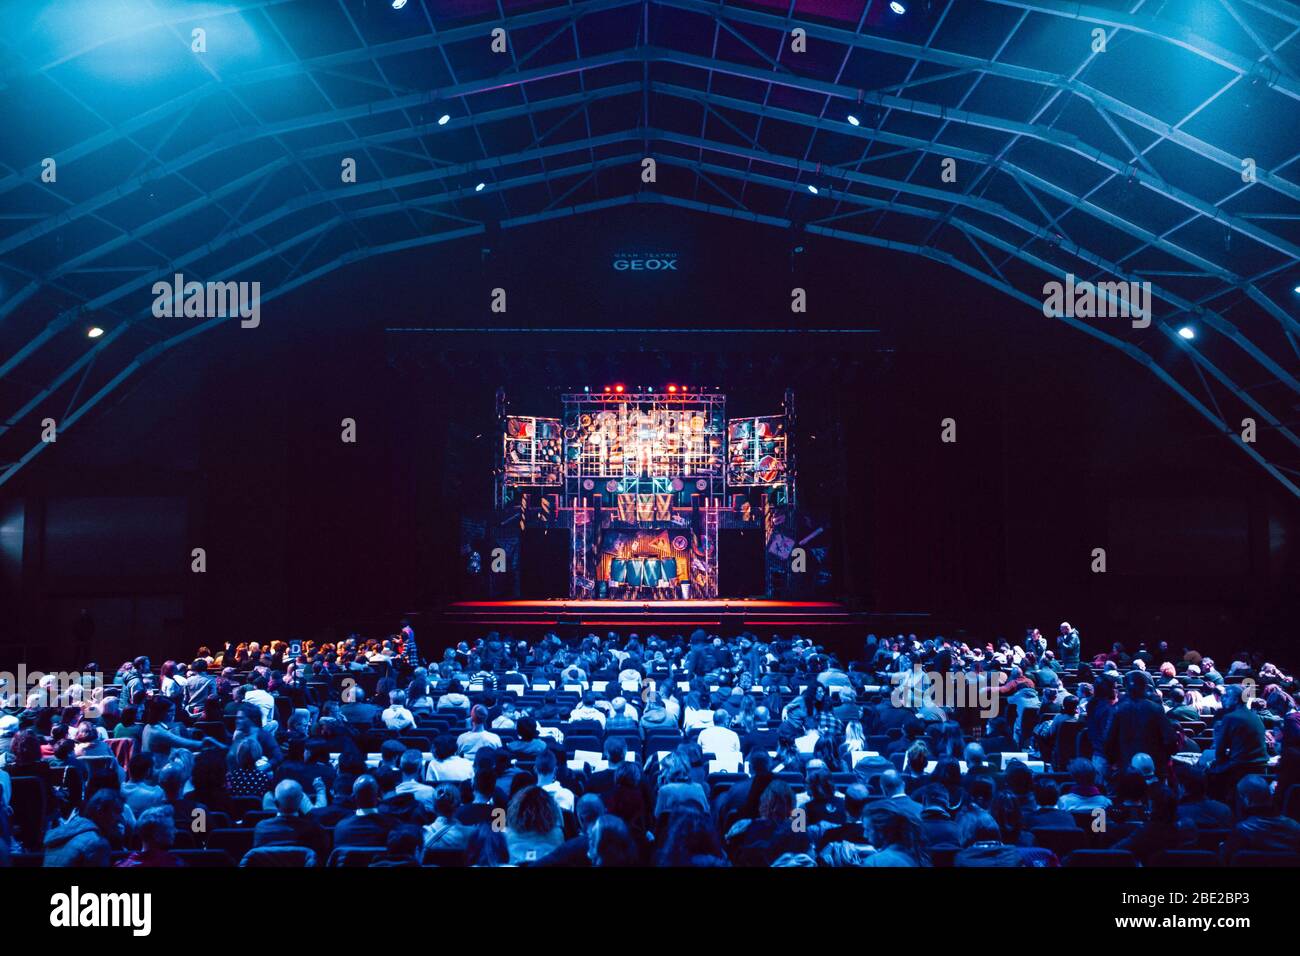 Stomp durante Stomp, Gran Teatro Geox, Italia, 12 de noviembre 2019 Fotografía de Alamy